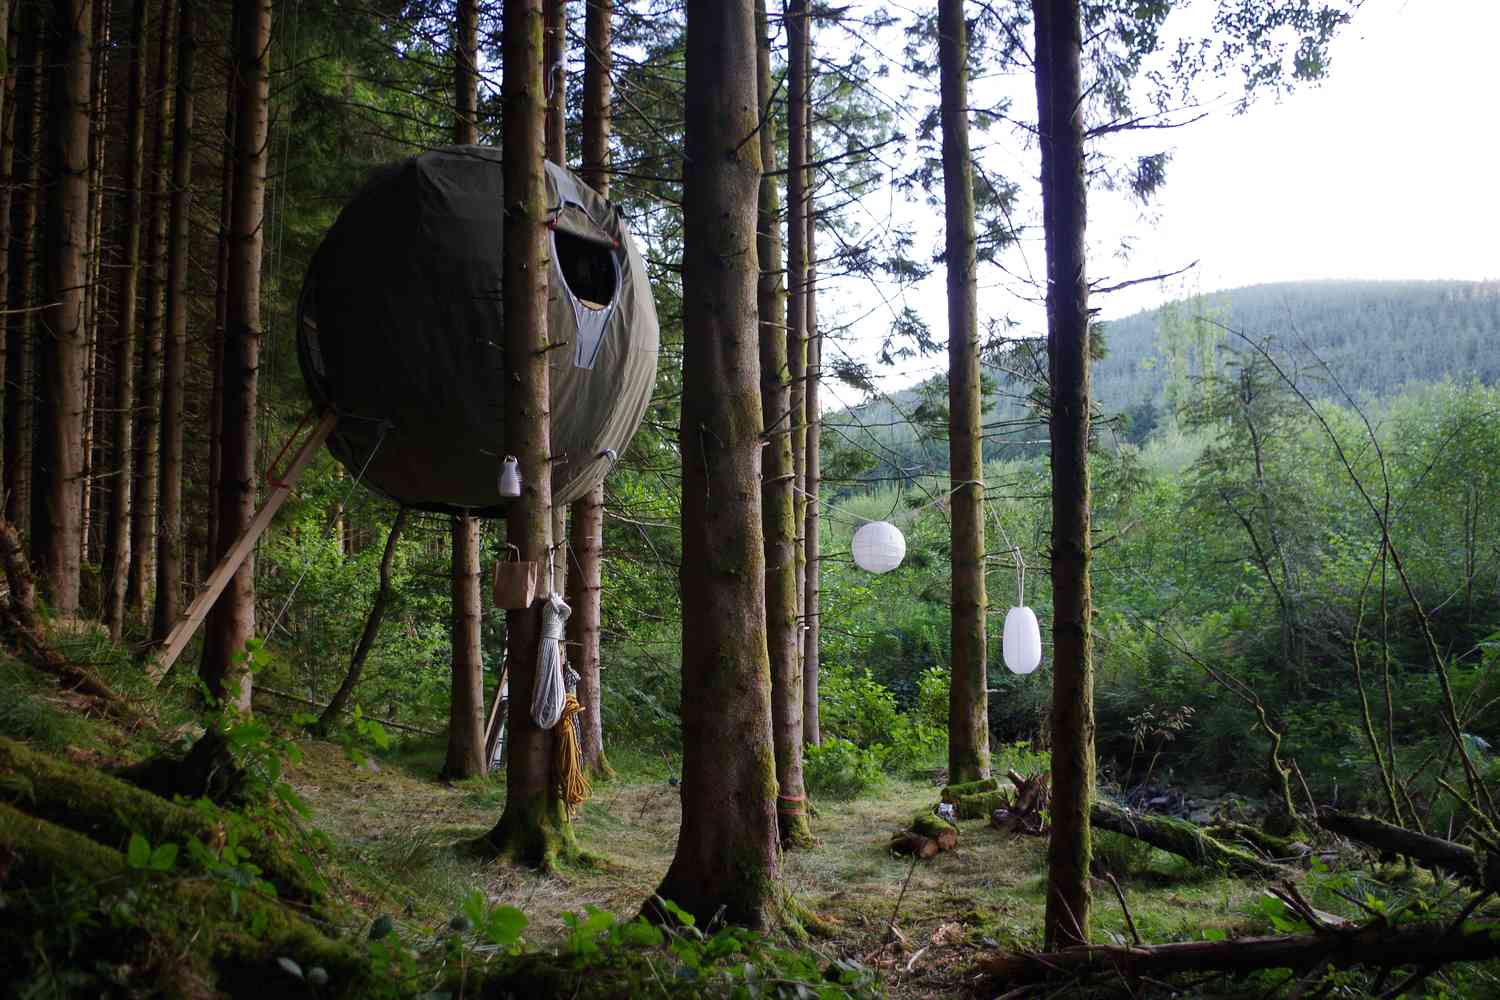 Kugelförmige Struktur, die in den Bäumen über dem Waldboden hängt